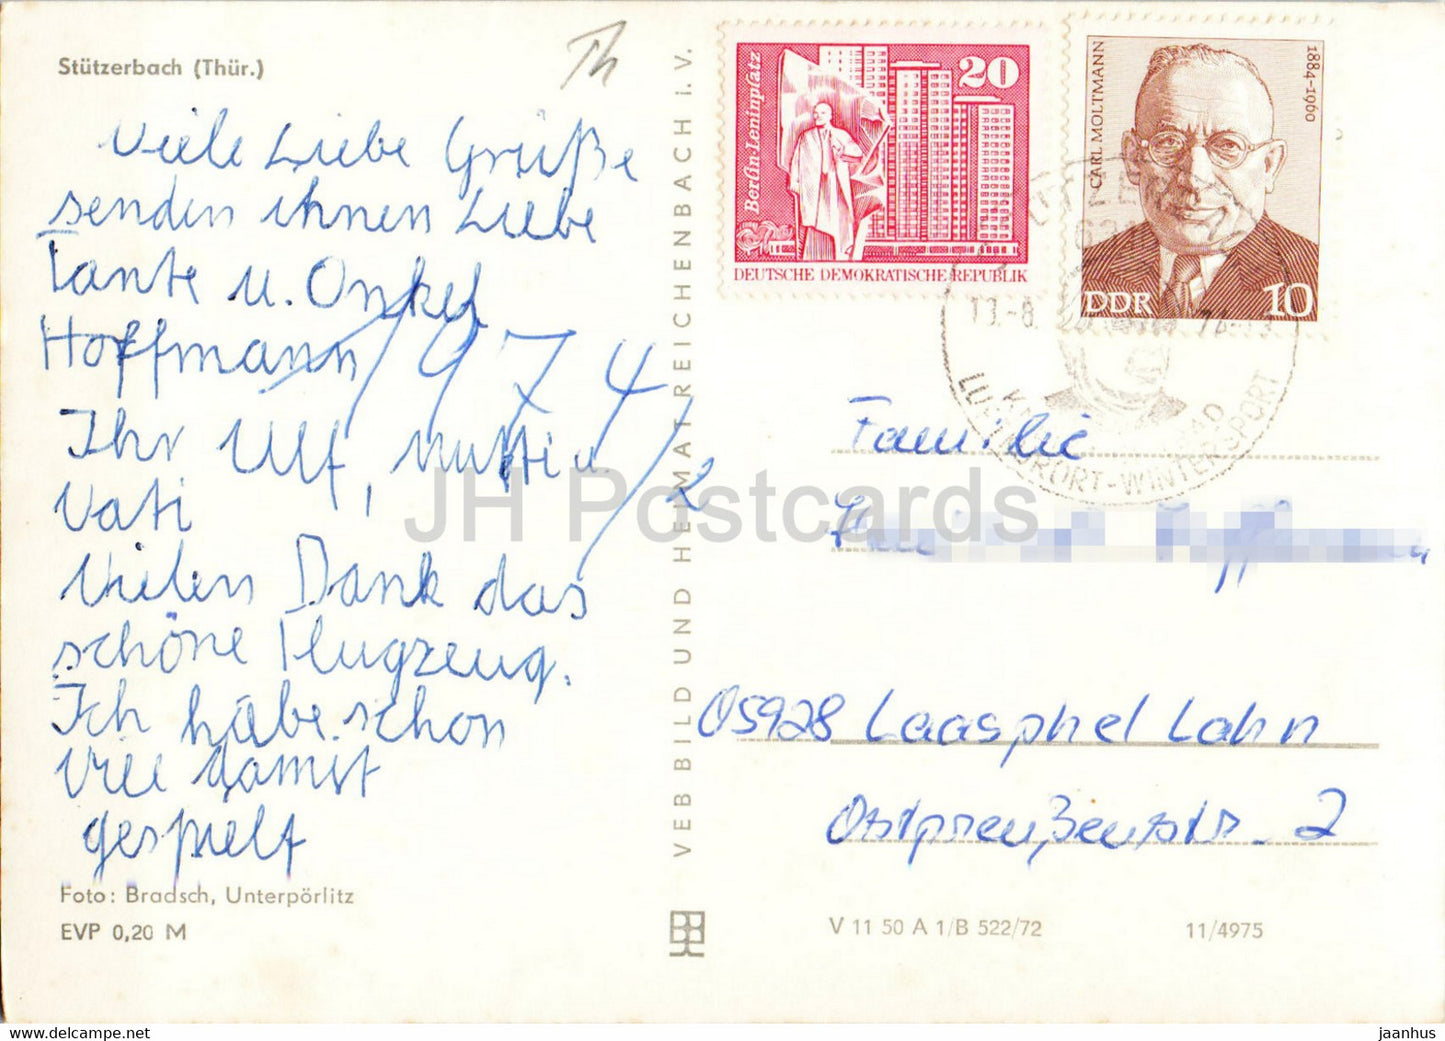 Stutzerbach - Thur - carte postale ancienne - 1974 - Allemagne DDR - utilisé